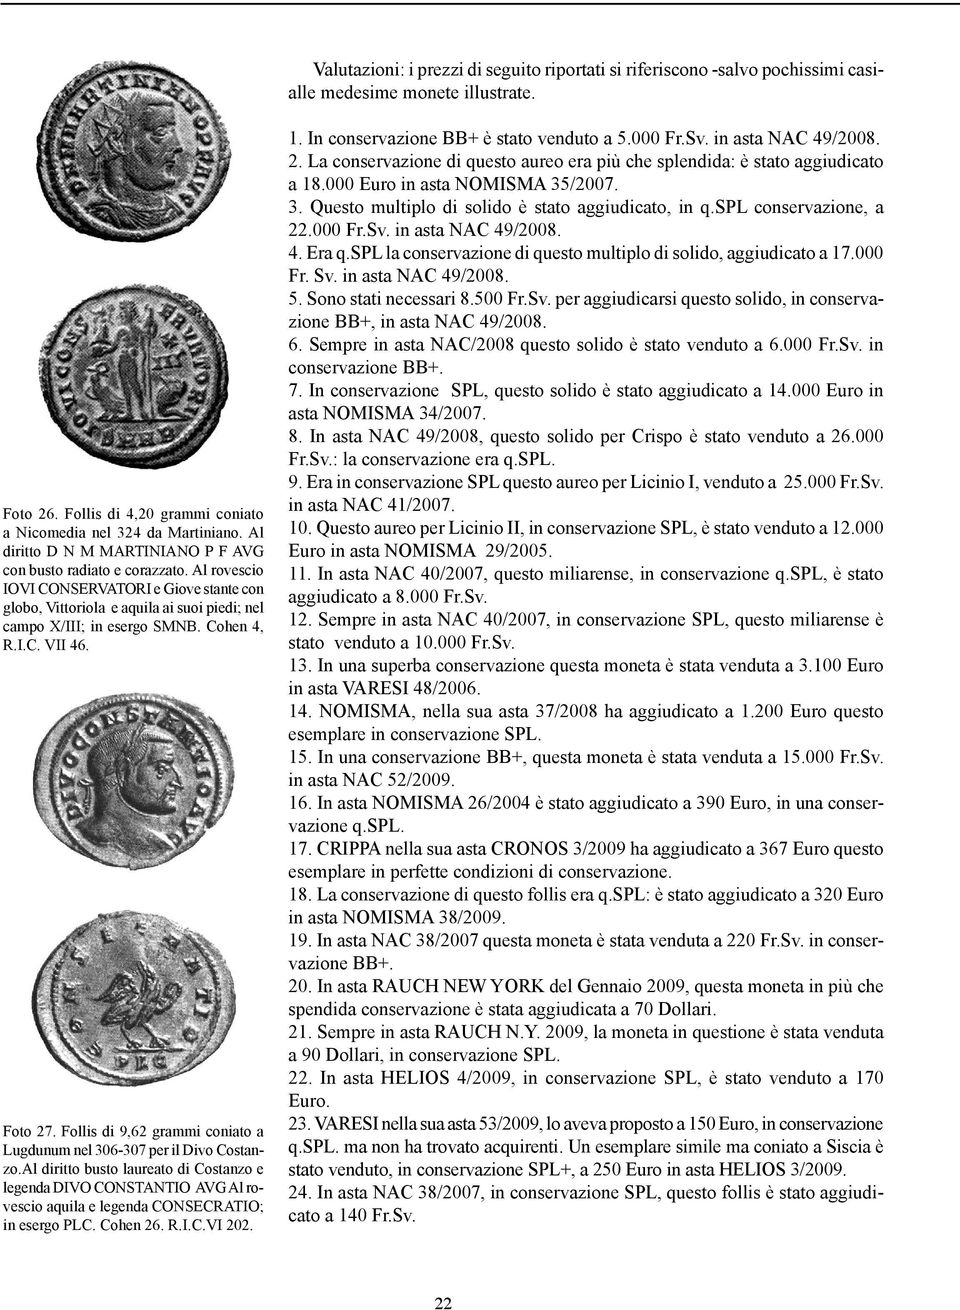 Cohen 4, R.I.C. VII 46. Foto 27. Follis di 9,62 grammi coniato a Lugdunum nel 306-307 per il Divo Costanzo.